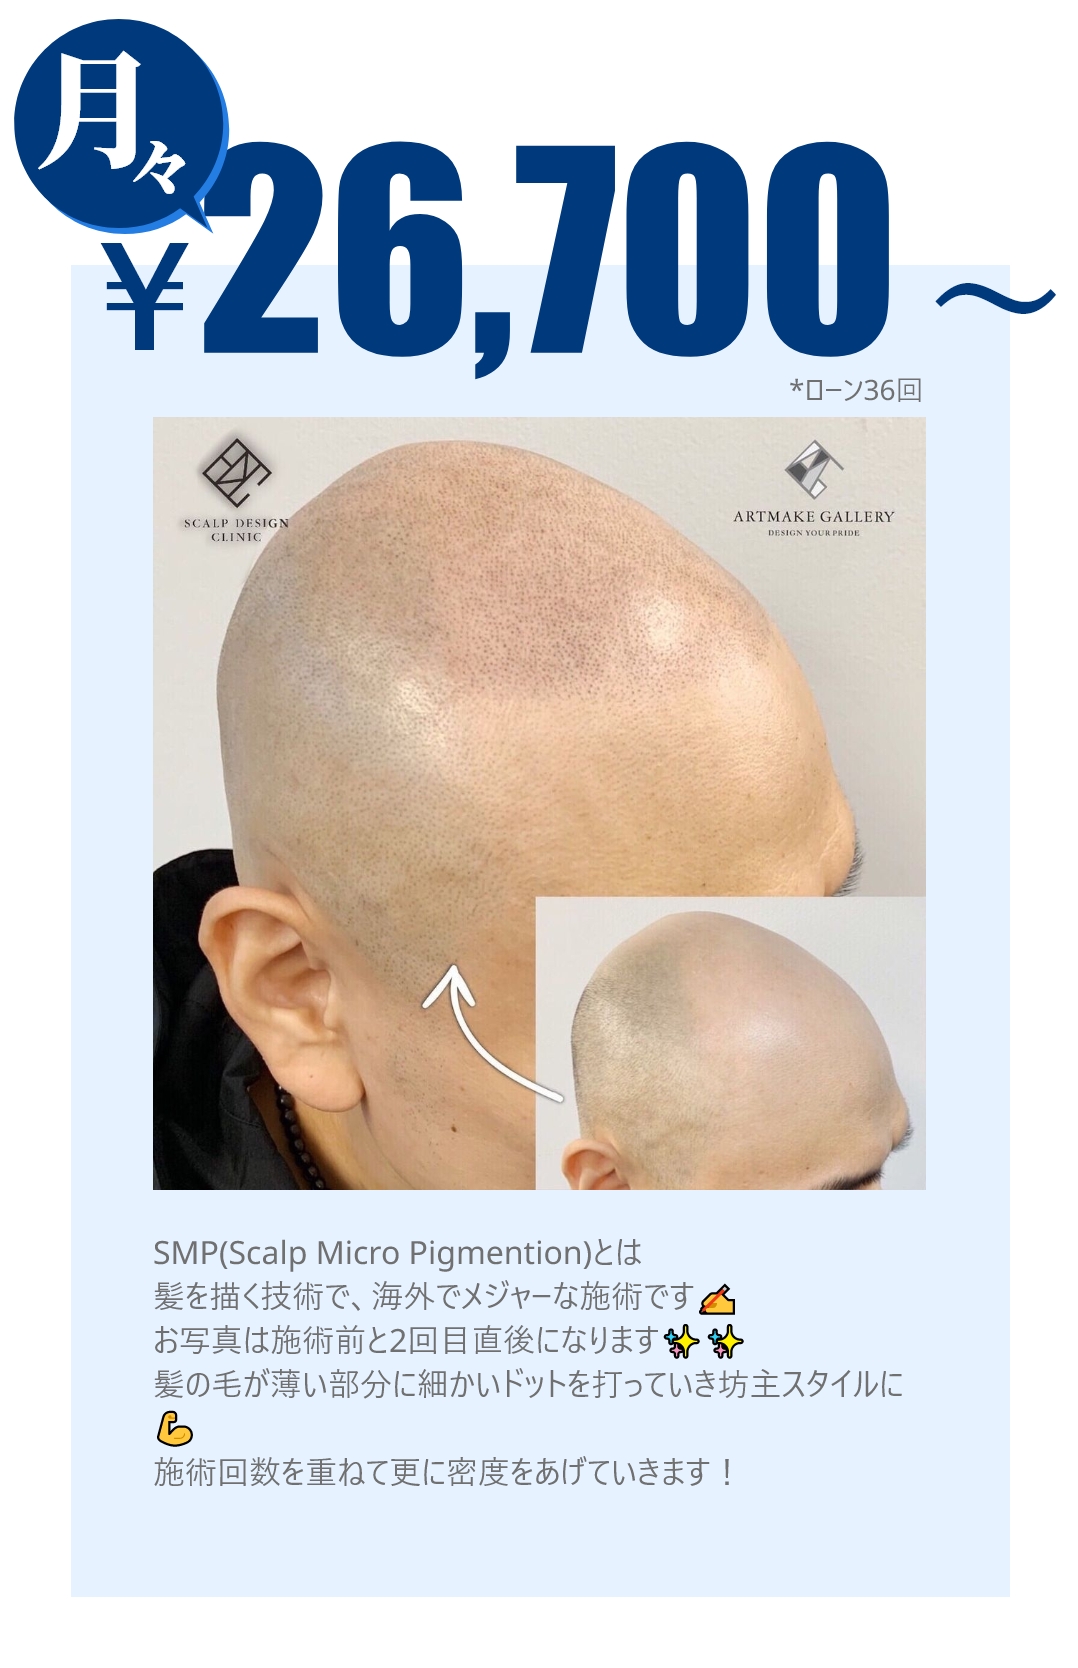 公式 Amgヘアアートメイク Aha 男性の薄毛に新提案 月々3 900円から